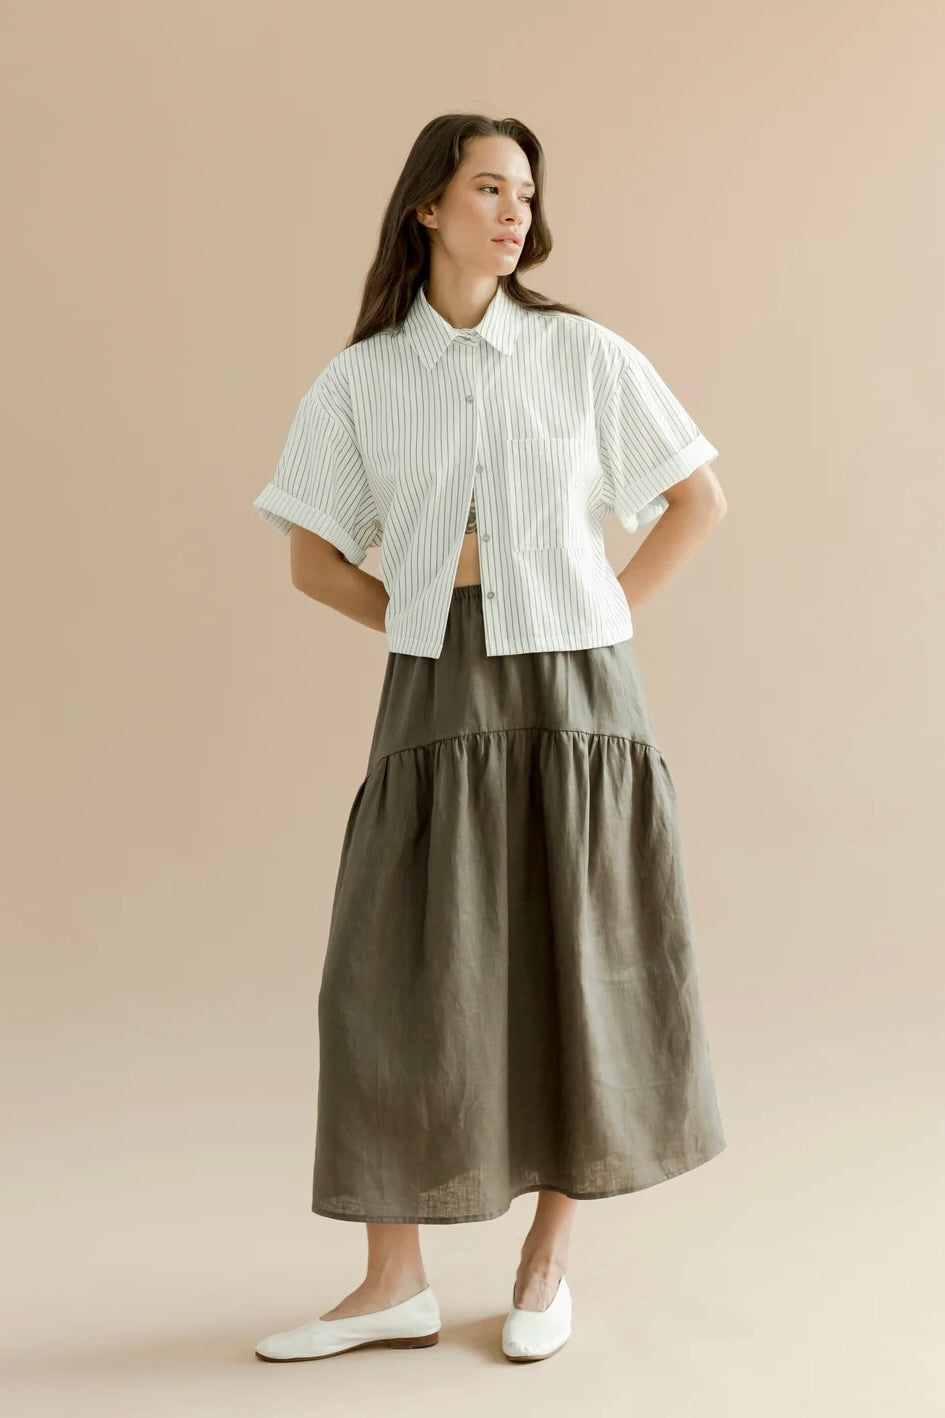 A Bronze Age Field Skirt / Charcoal Linen